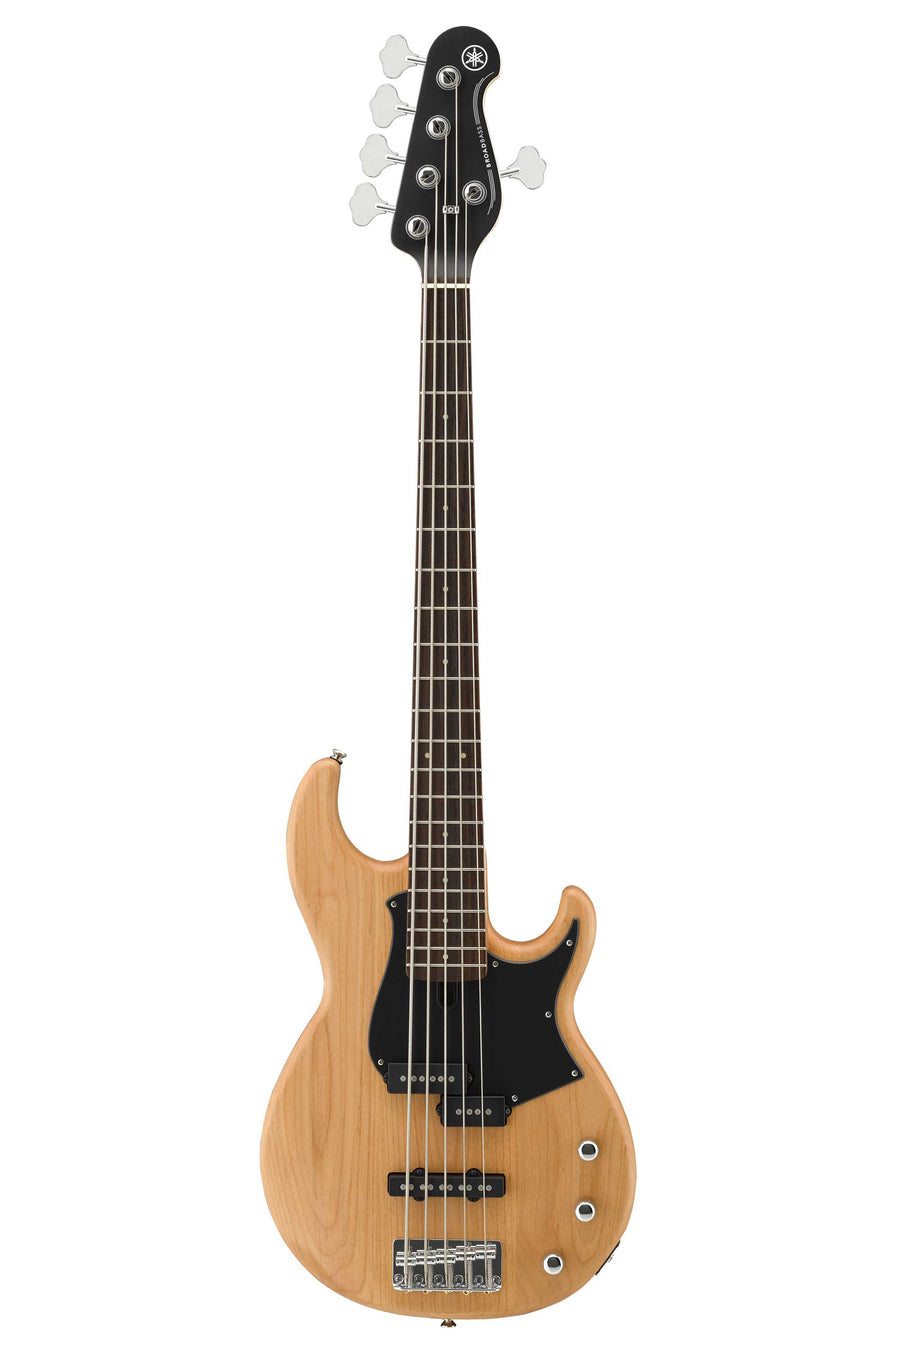 Yamaha BB235 5-String Bass Guitar Yellow Natural Satin